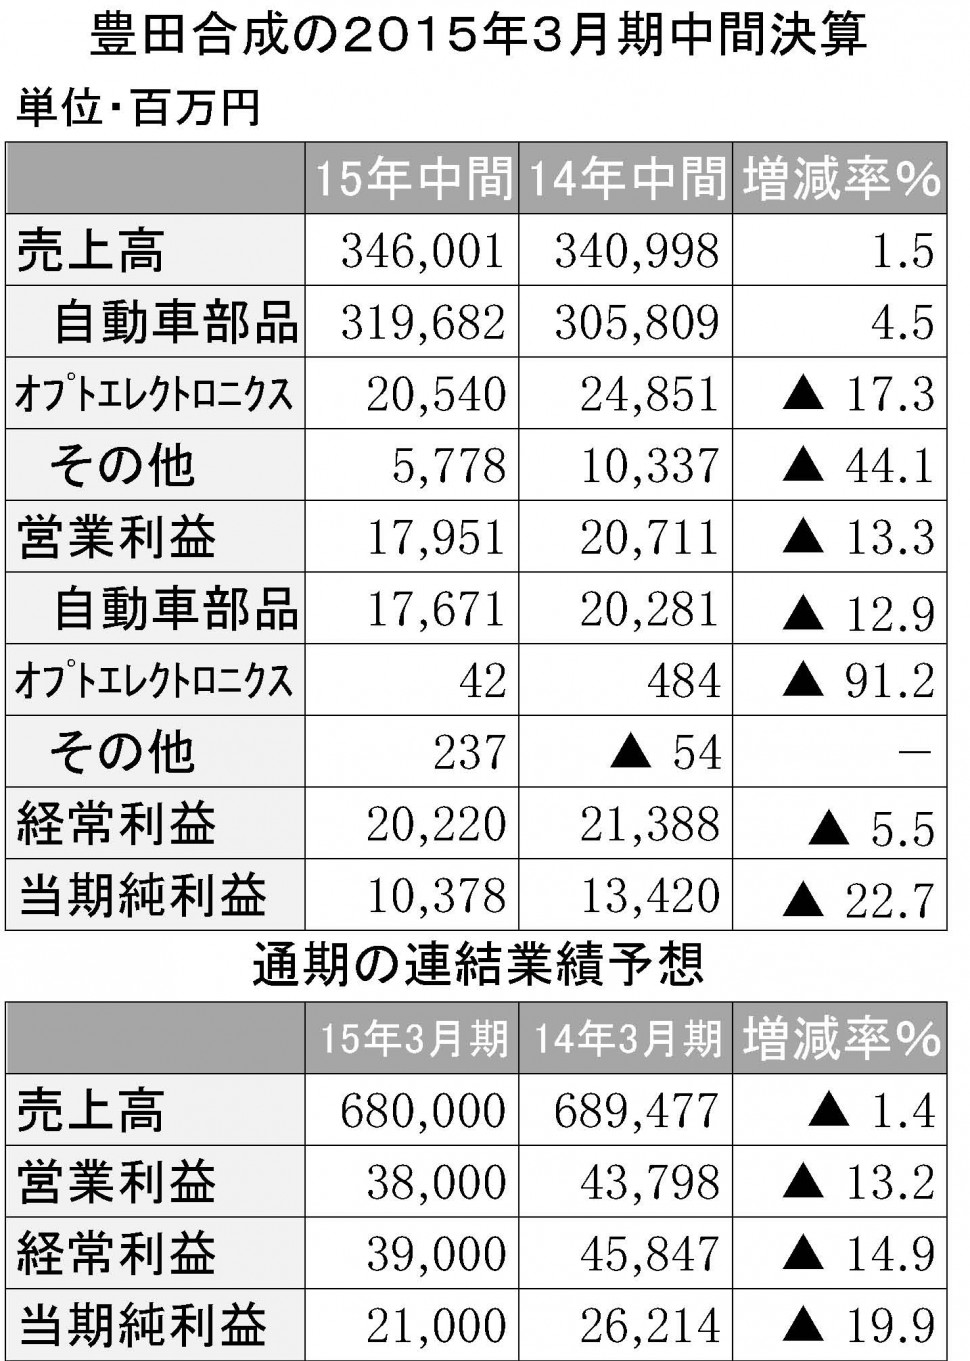 豊田合成2015年3月期第2四半期決算